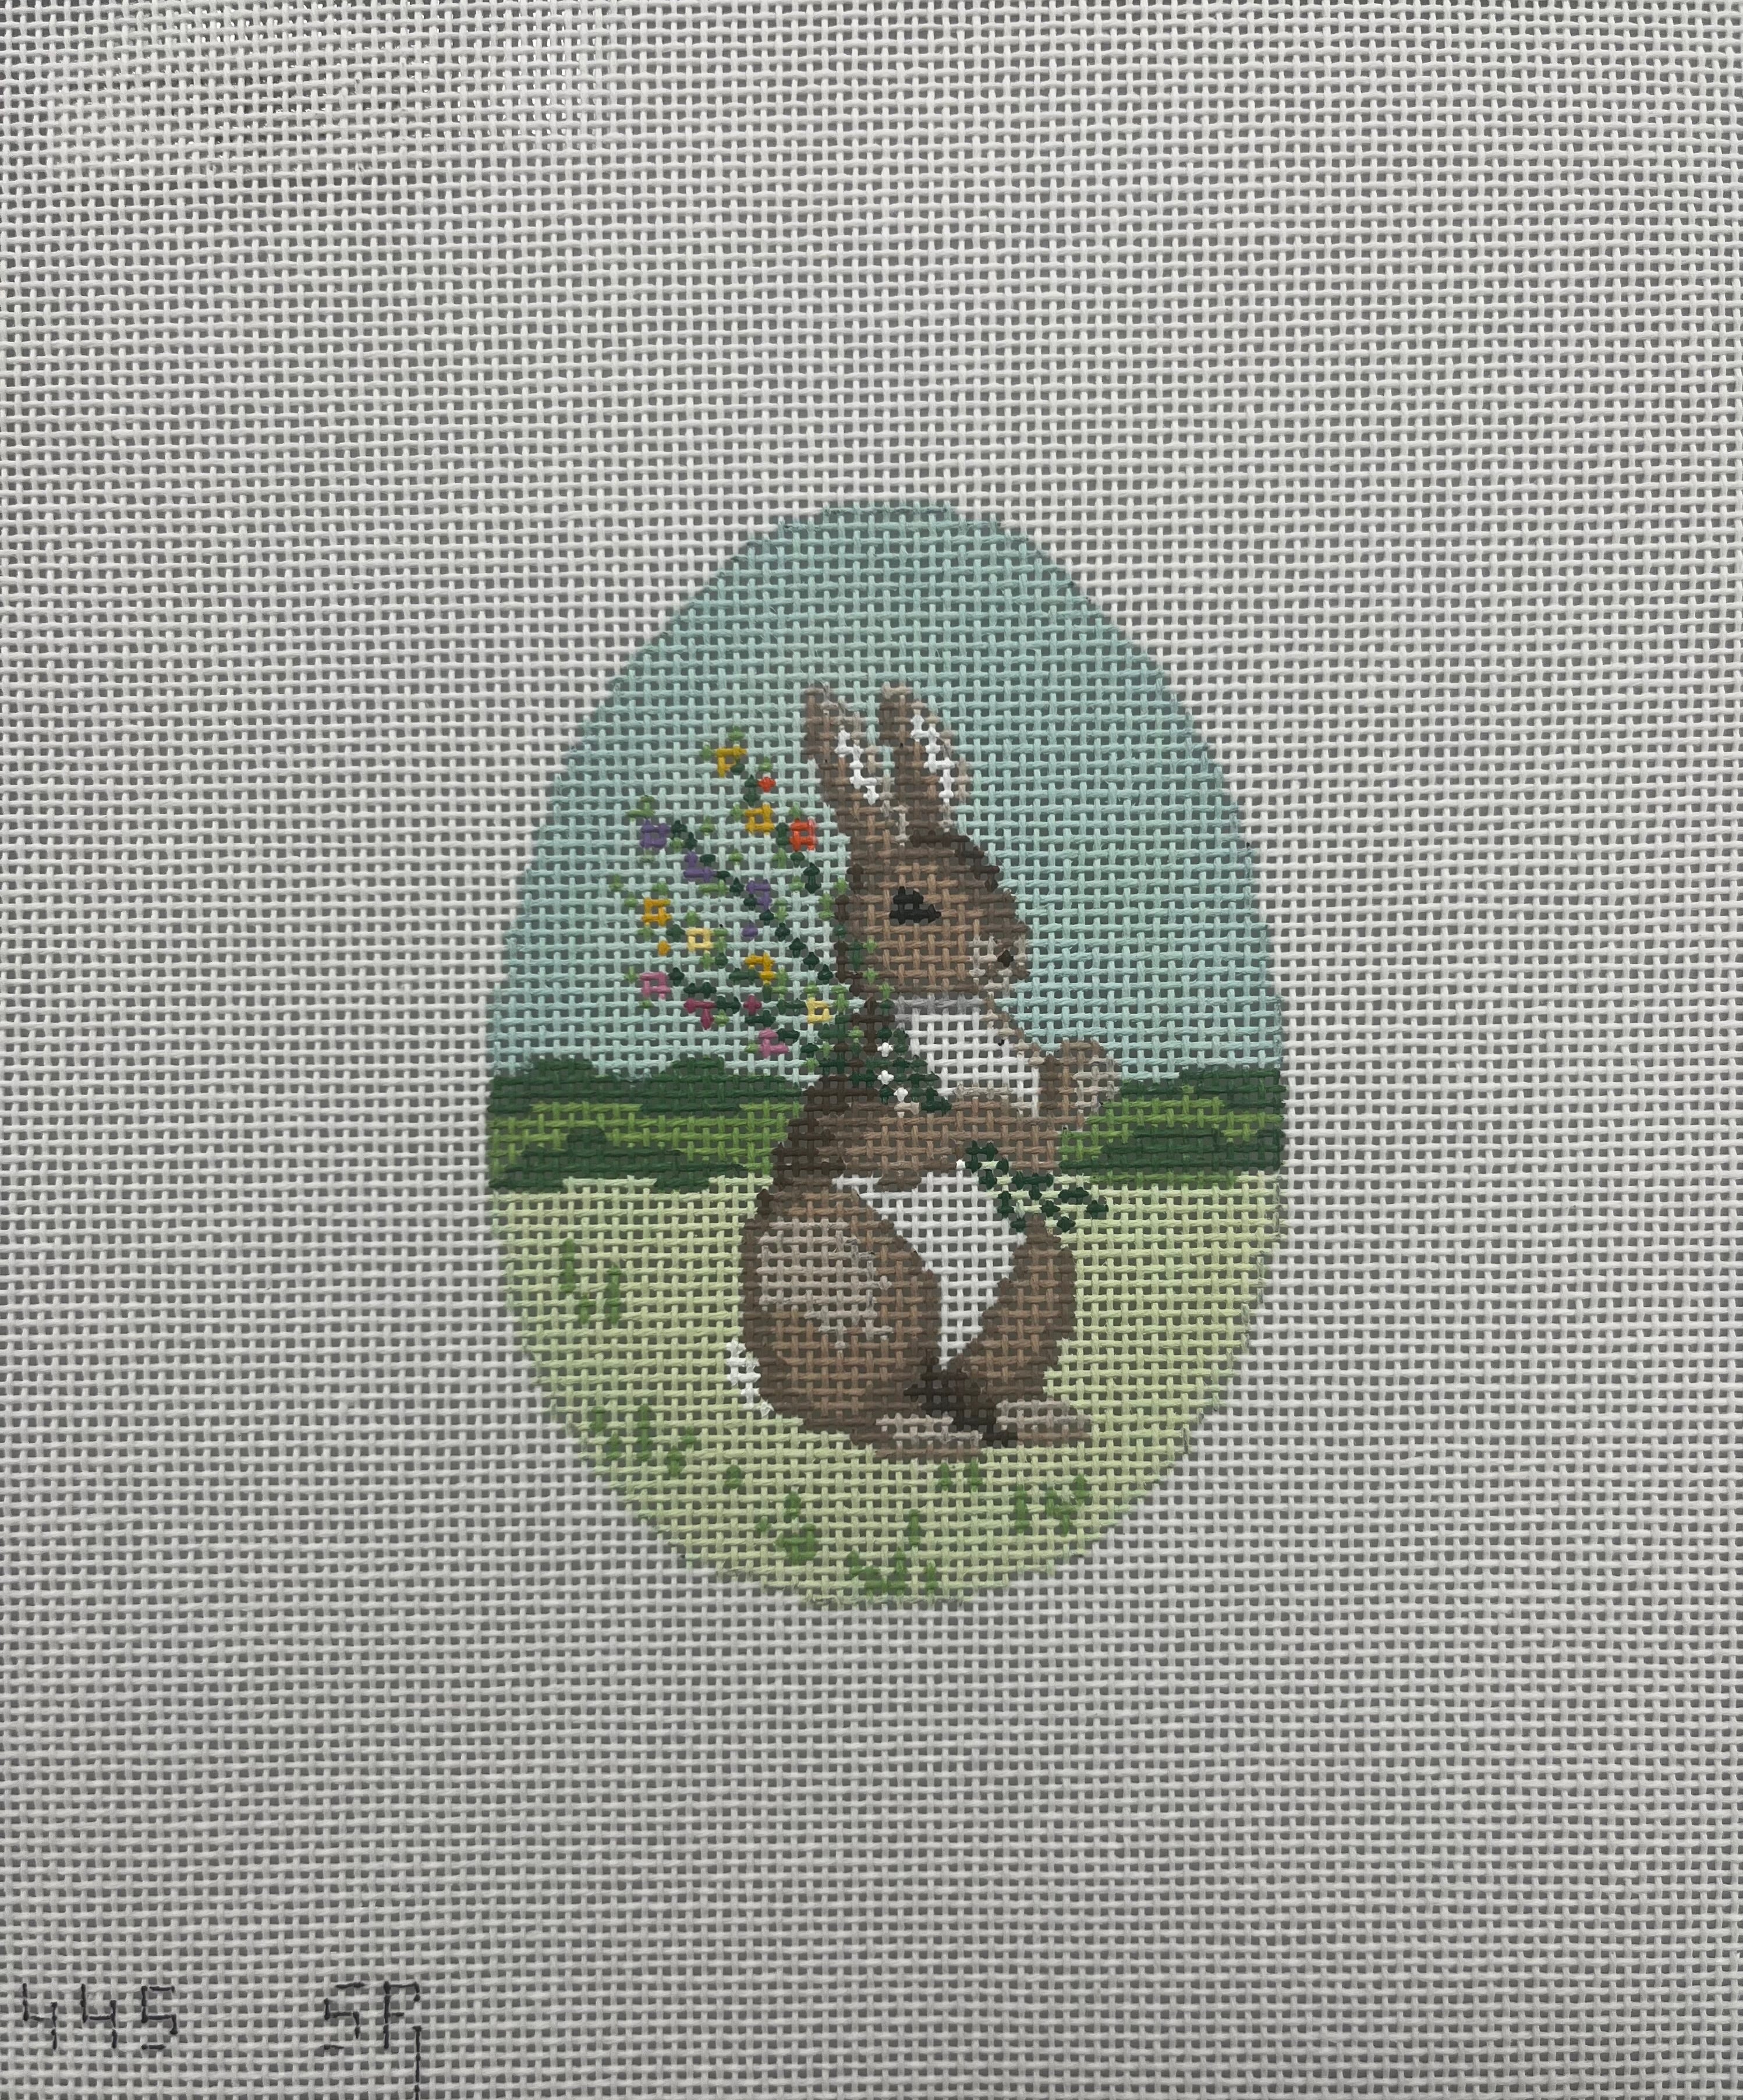 445 - Rabbit In Flowers 4" Egg